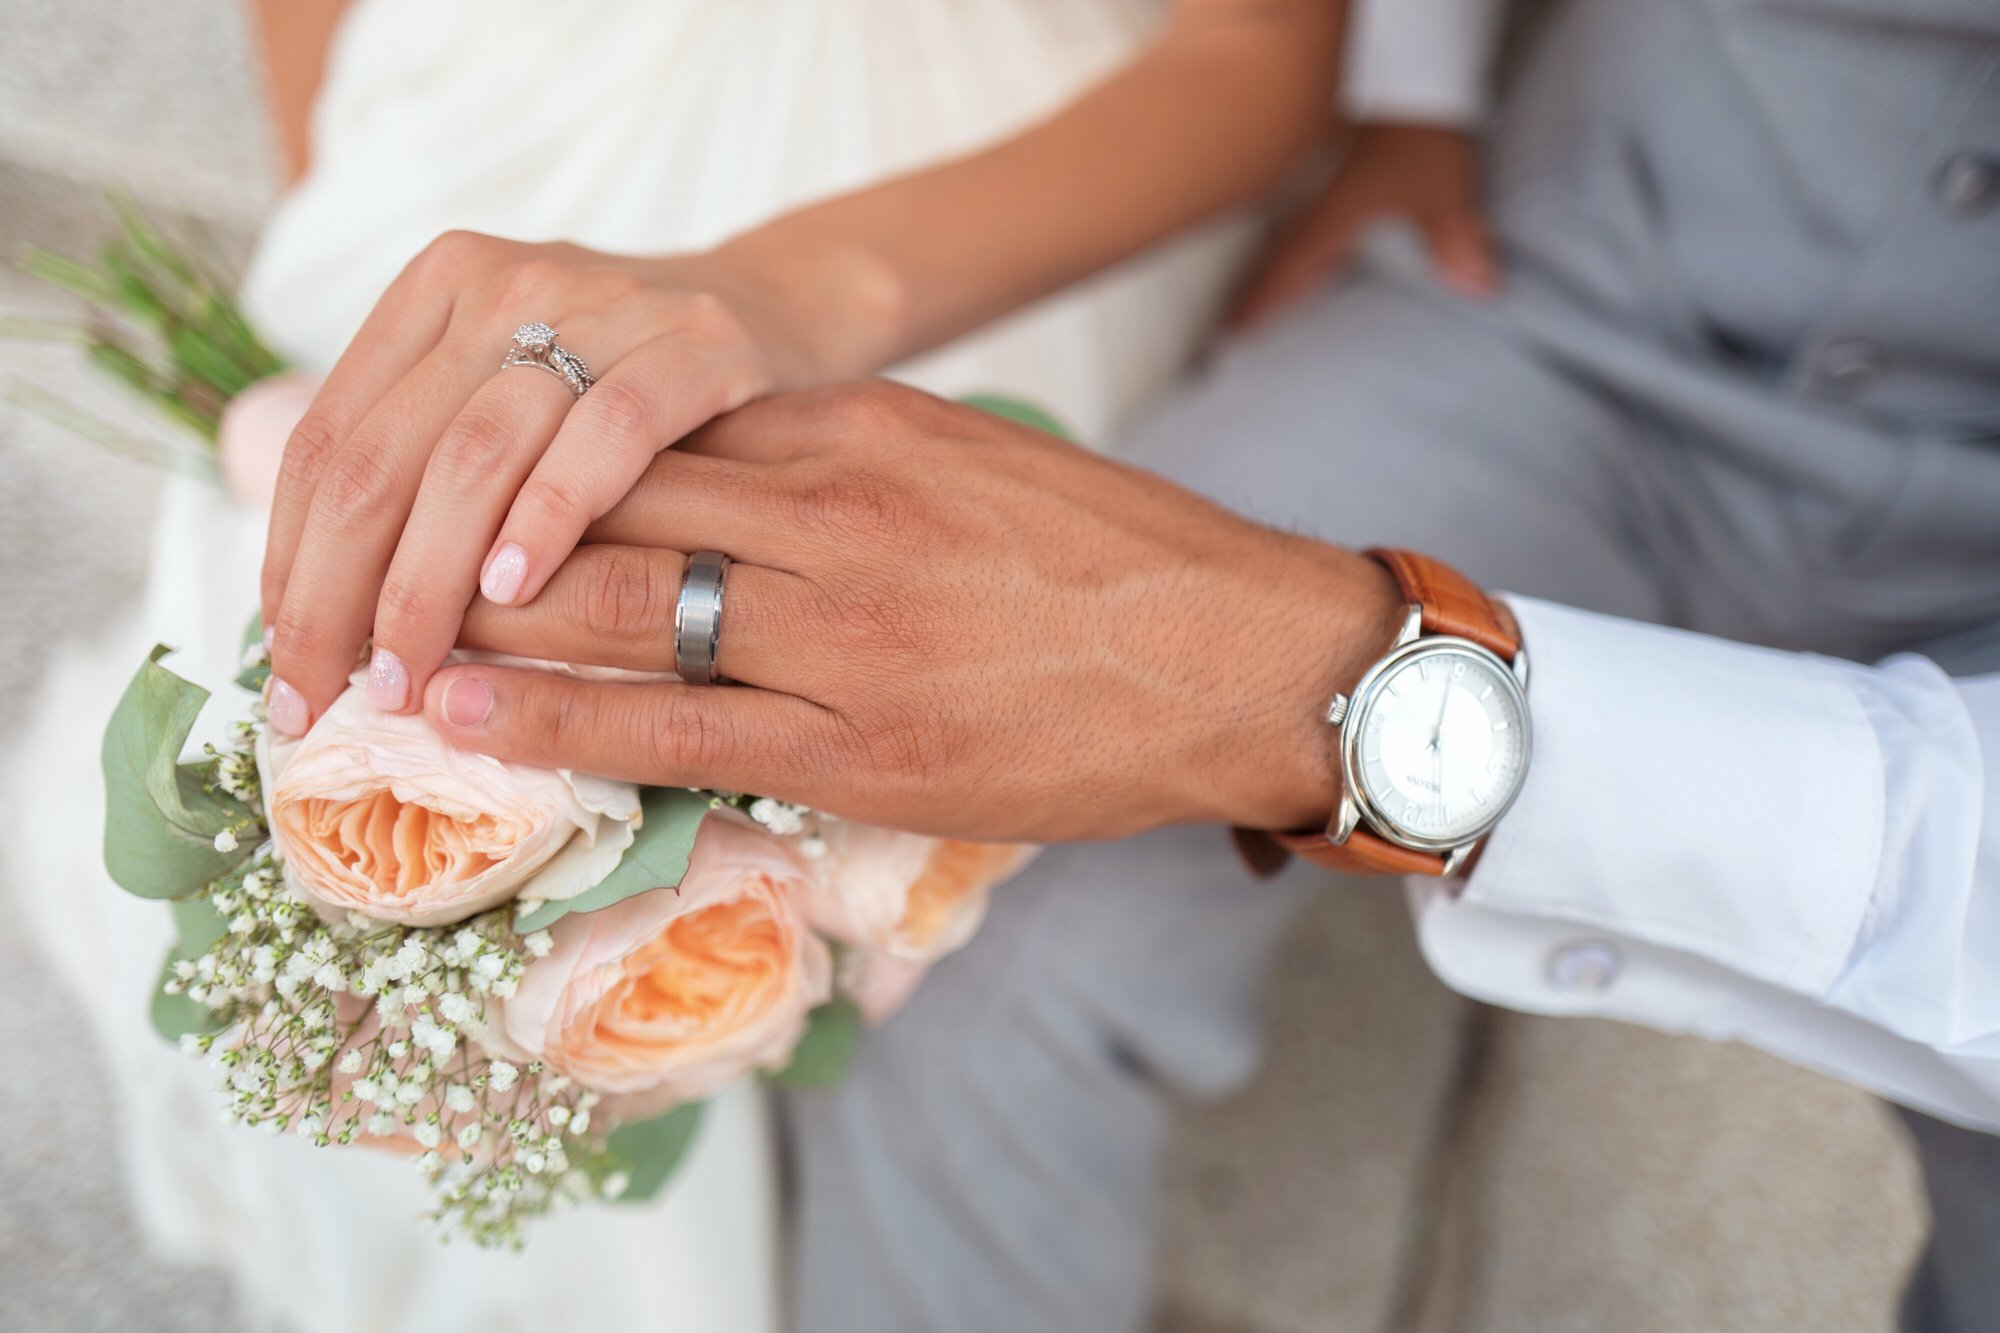 Οι γυναίκες αλλάζουν το επώνυμο τους μετά τον γάμο – Μια ισχυρή παράδοση  